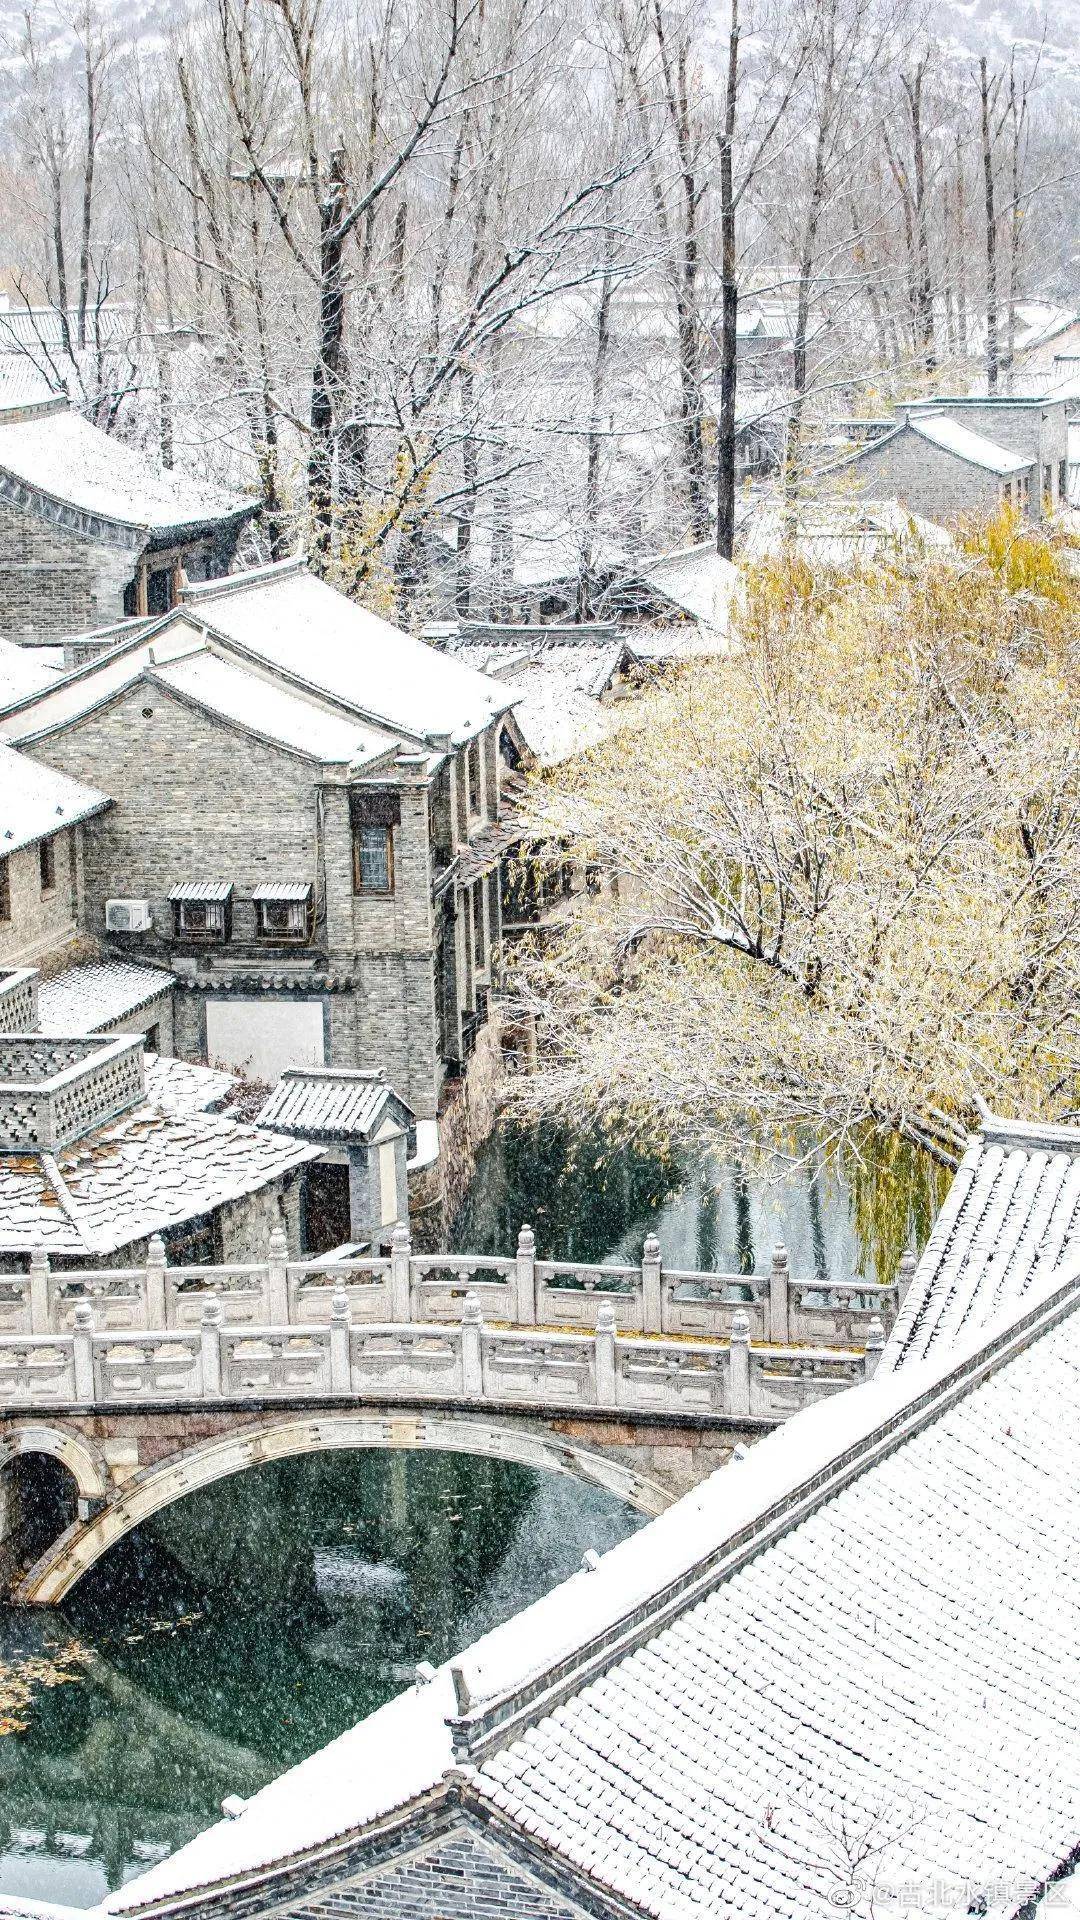 心灵四季 美丽中国  迎冬小雪至，应节晚虹藏